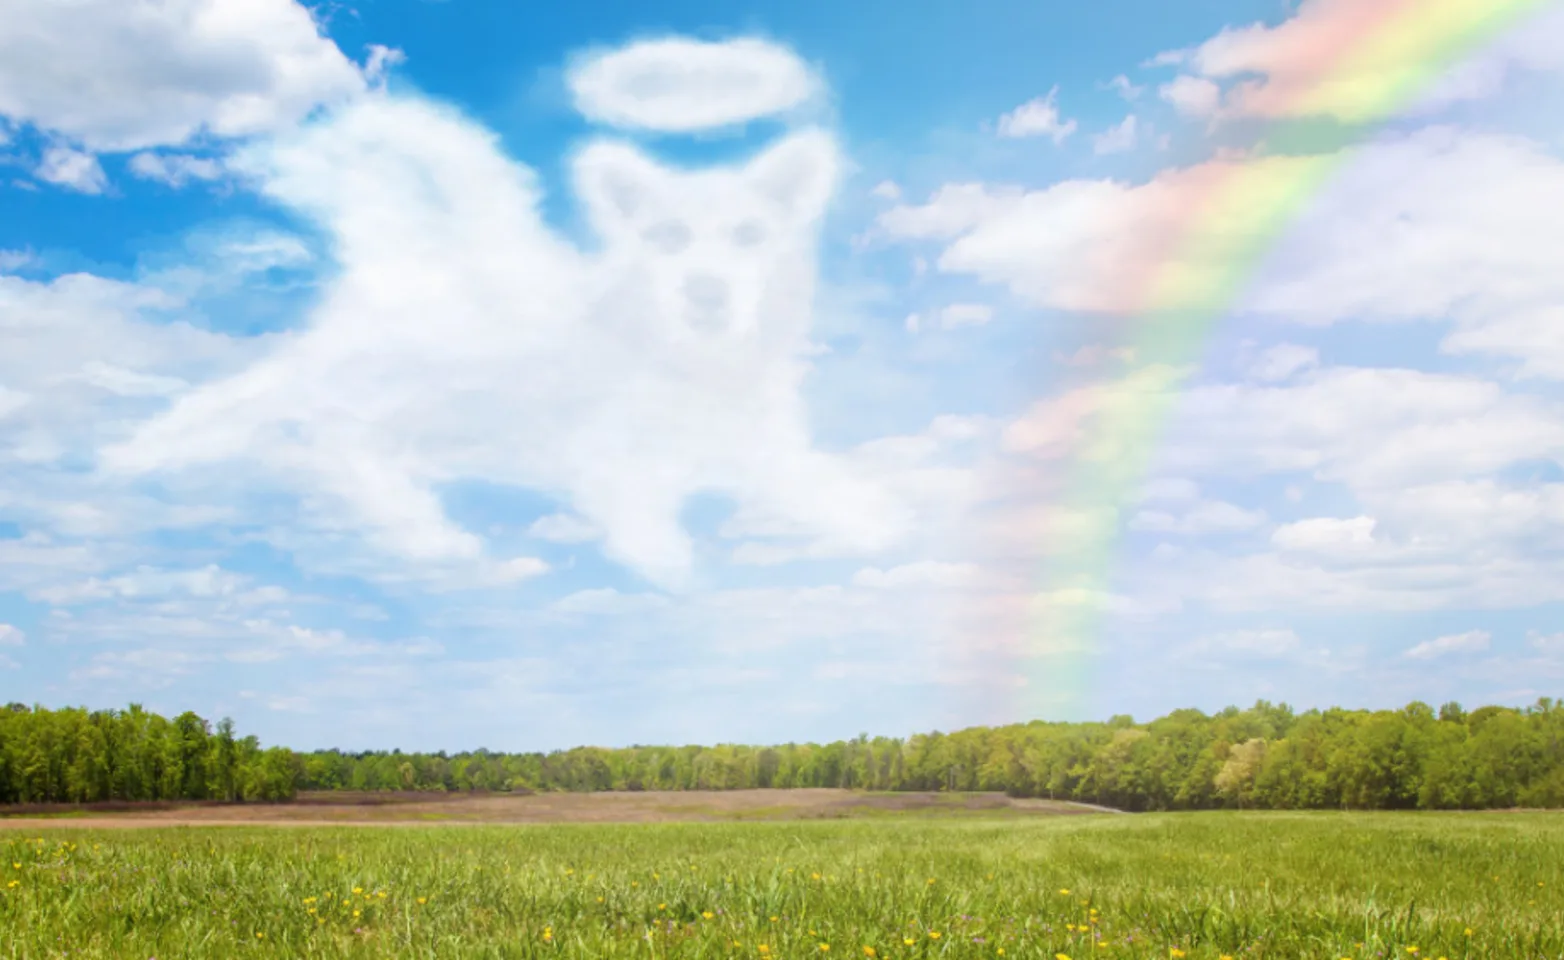 A rainbow with a dog shaped cloud